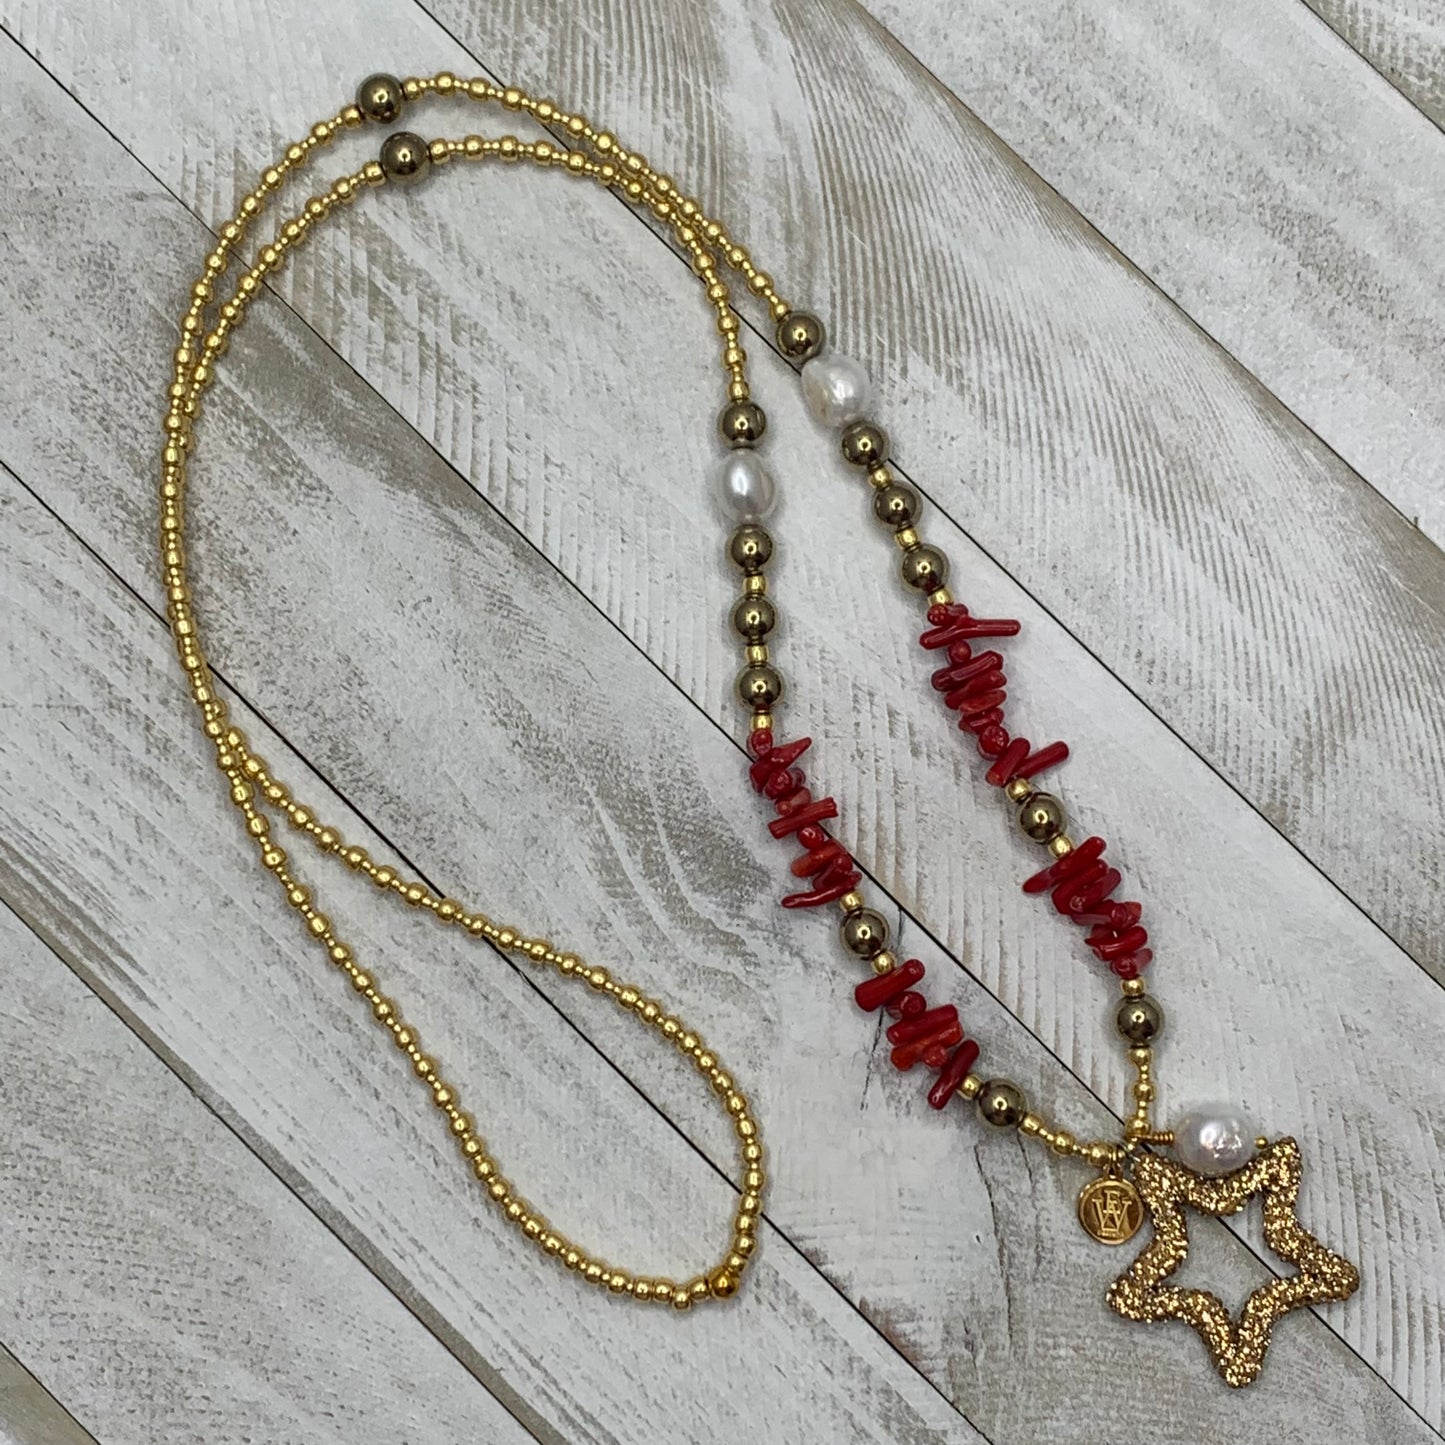 Erika Williner Designs - Freedom star necklace